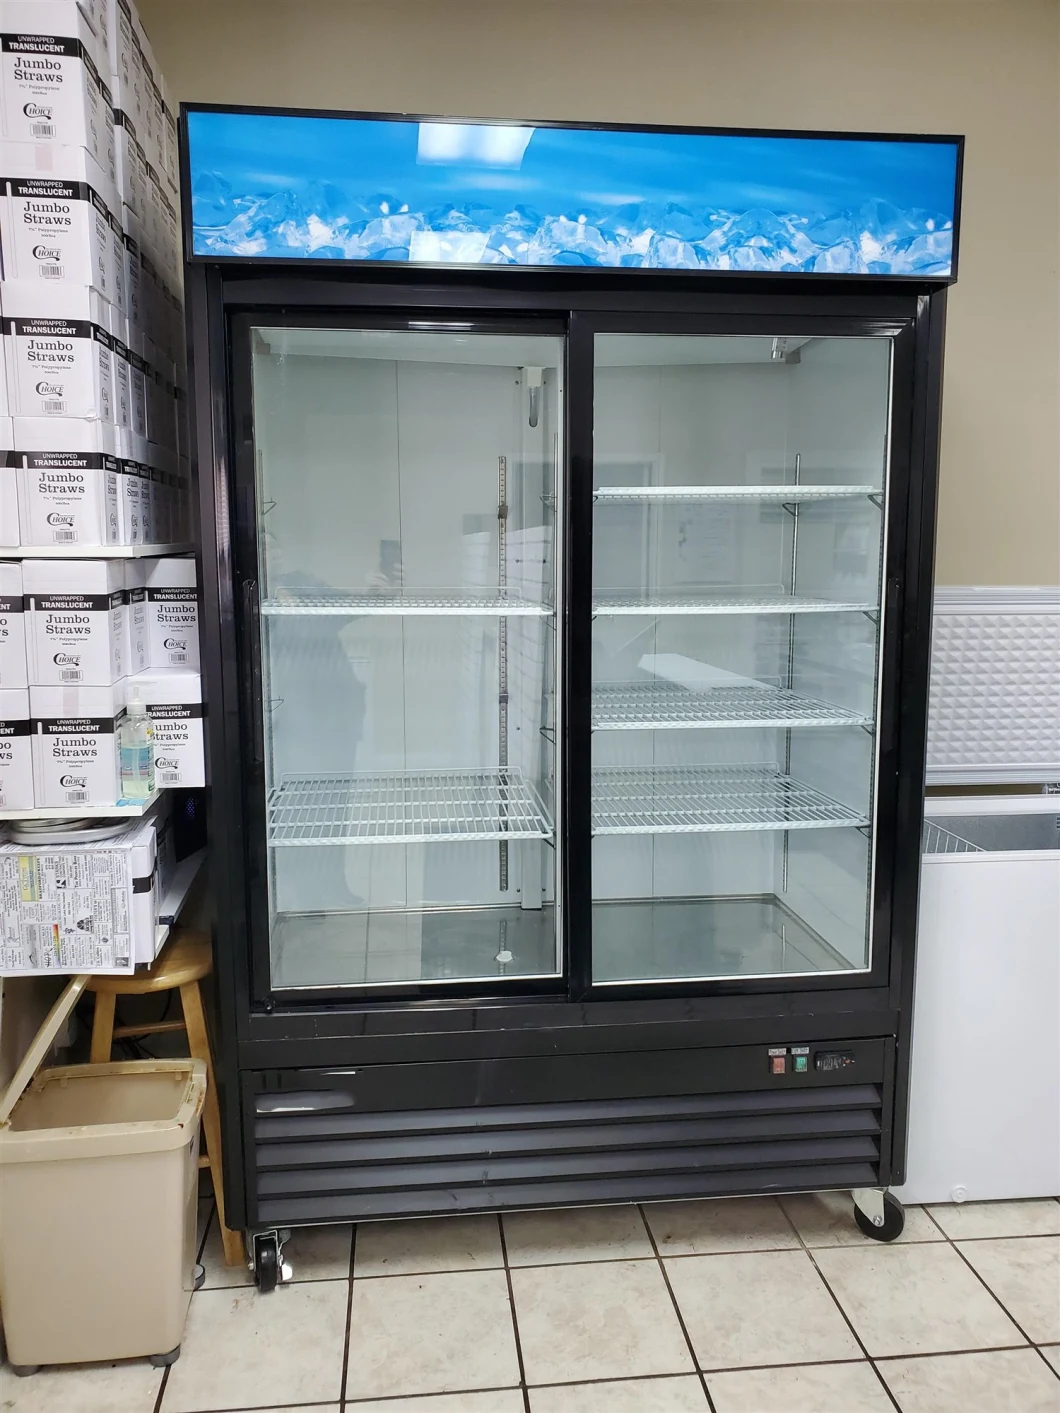 Double Door Glass Door Chiller Bakery Merchandiser Freezer Upright Showcase Cooler